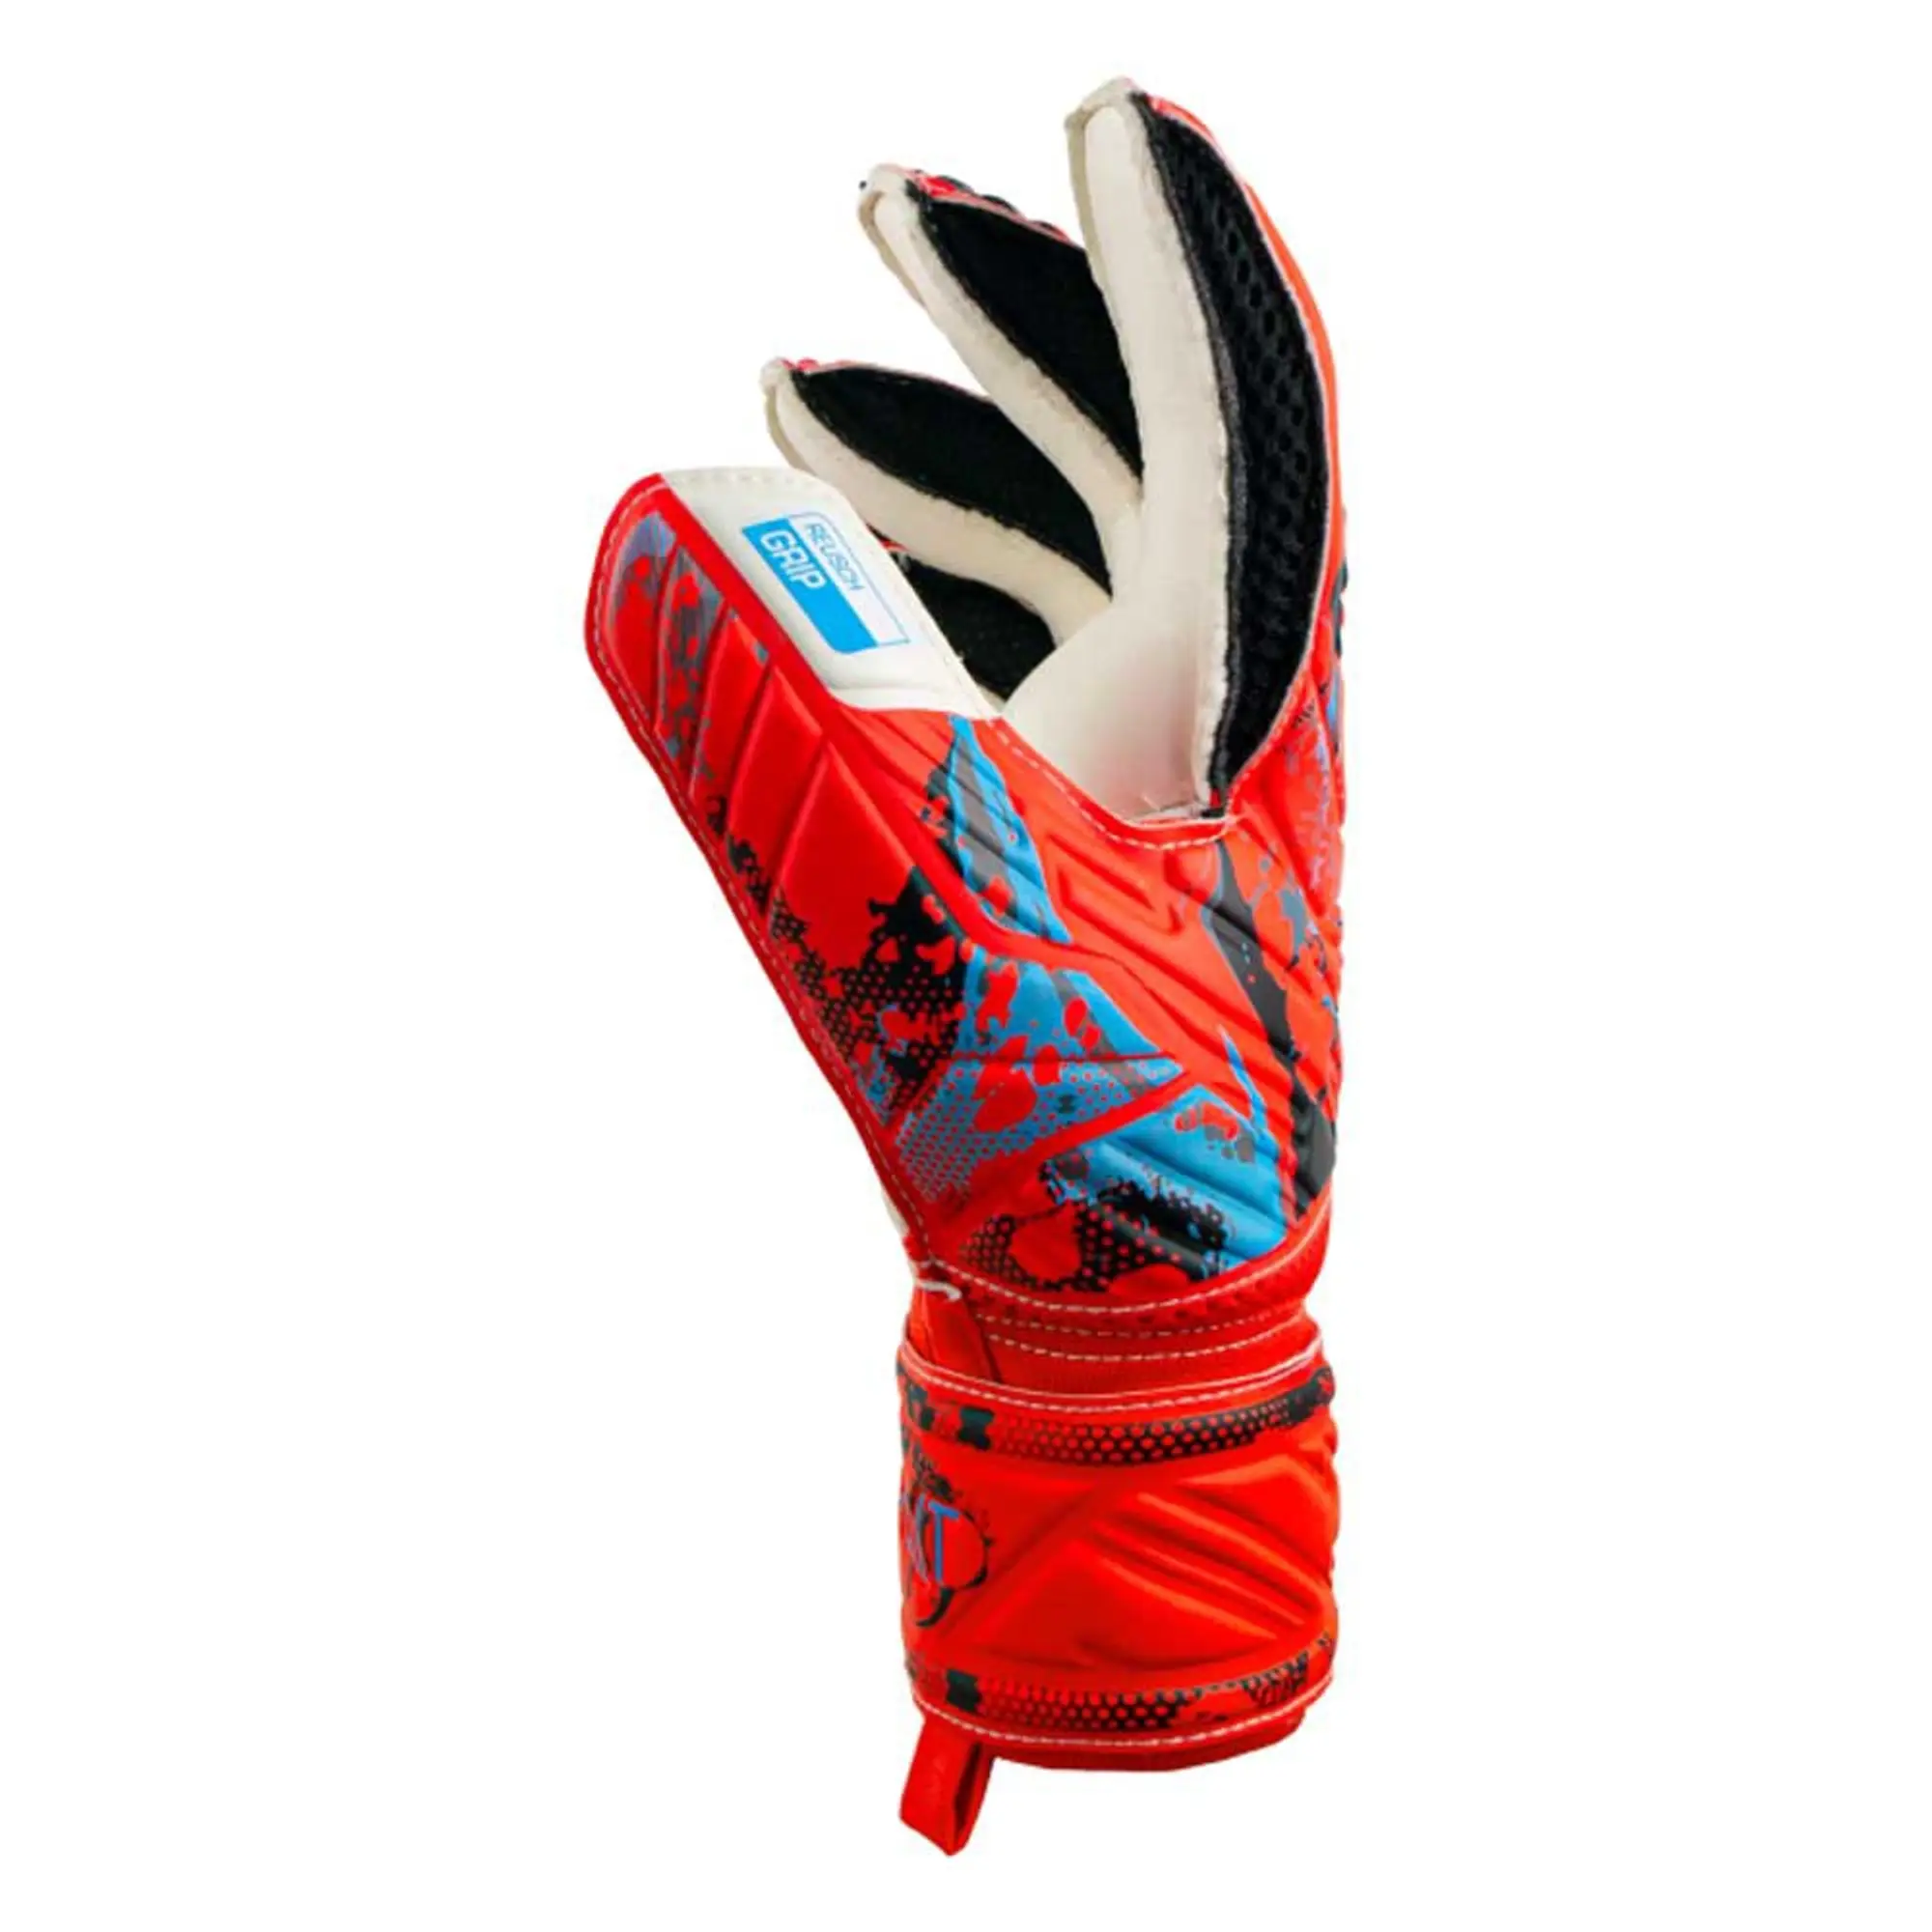 Reusch Attrakt Grip Goalkeeper Gloves